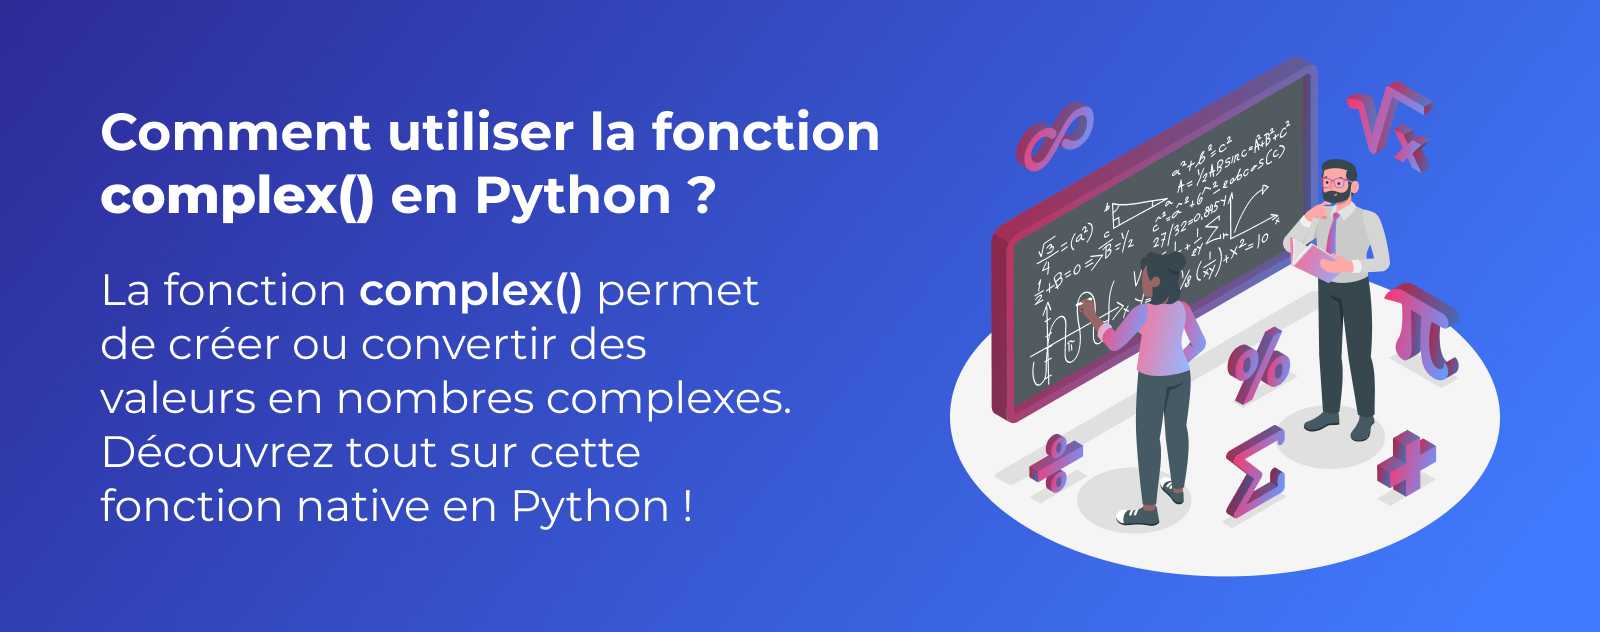 La fonction complex en Python